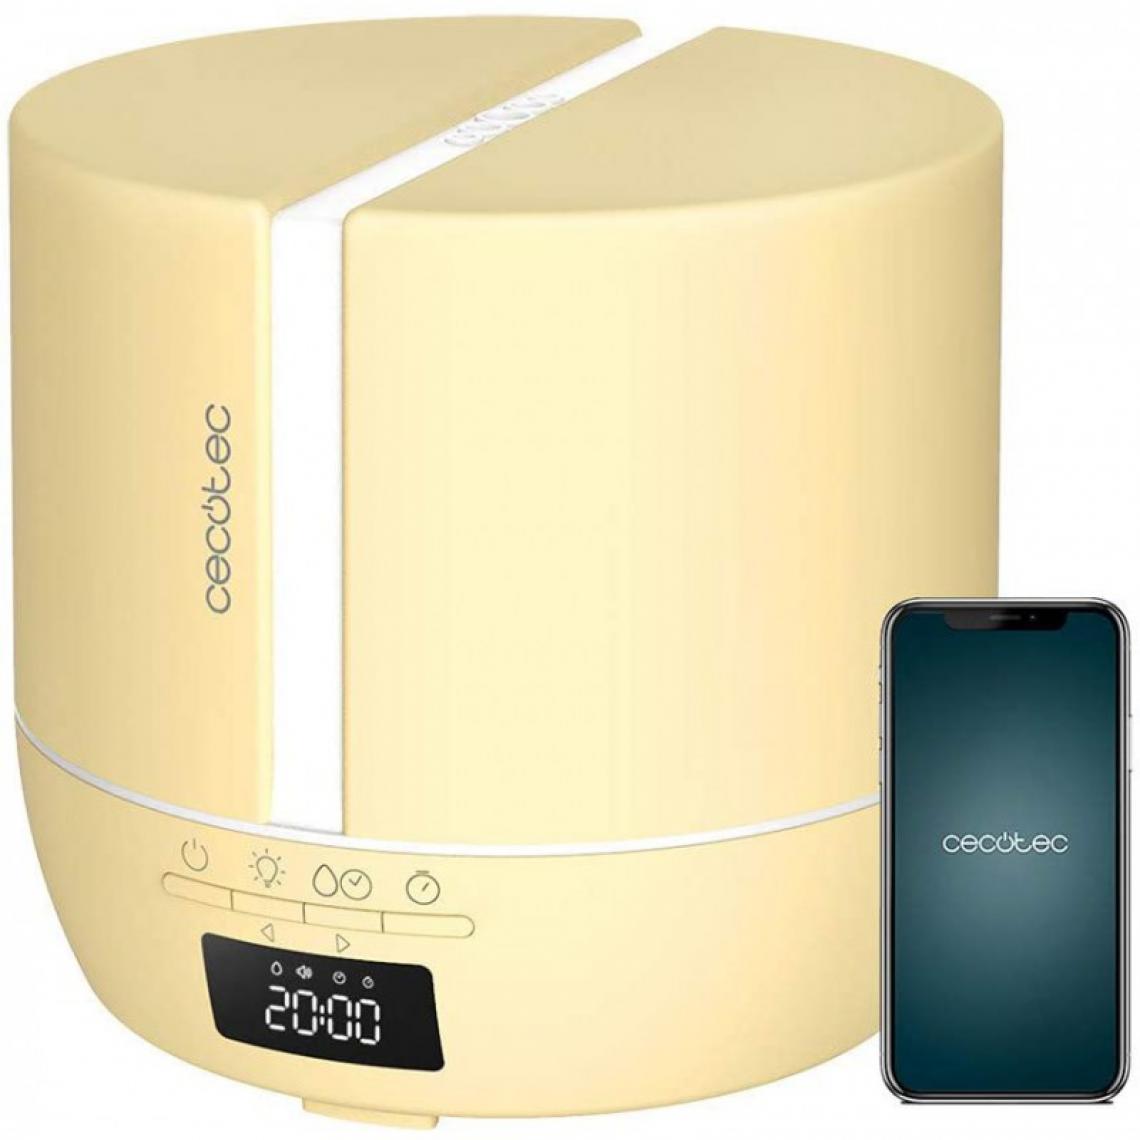 Cecotec - Cecotec, Diffuseur d'arômes, PureAroma 550 Connected SunLight, Capacité : 500 ml, écran LED, hautparleur, contrôle par Bluetooth - Purificateur d'air